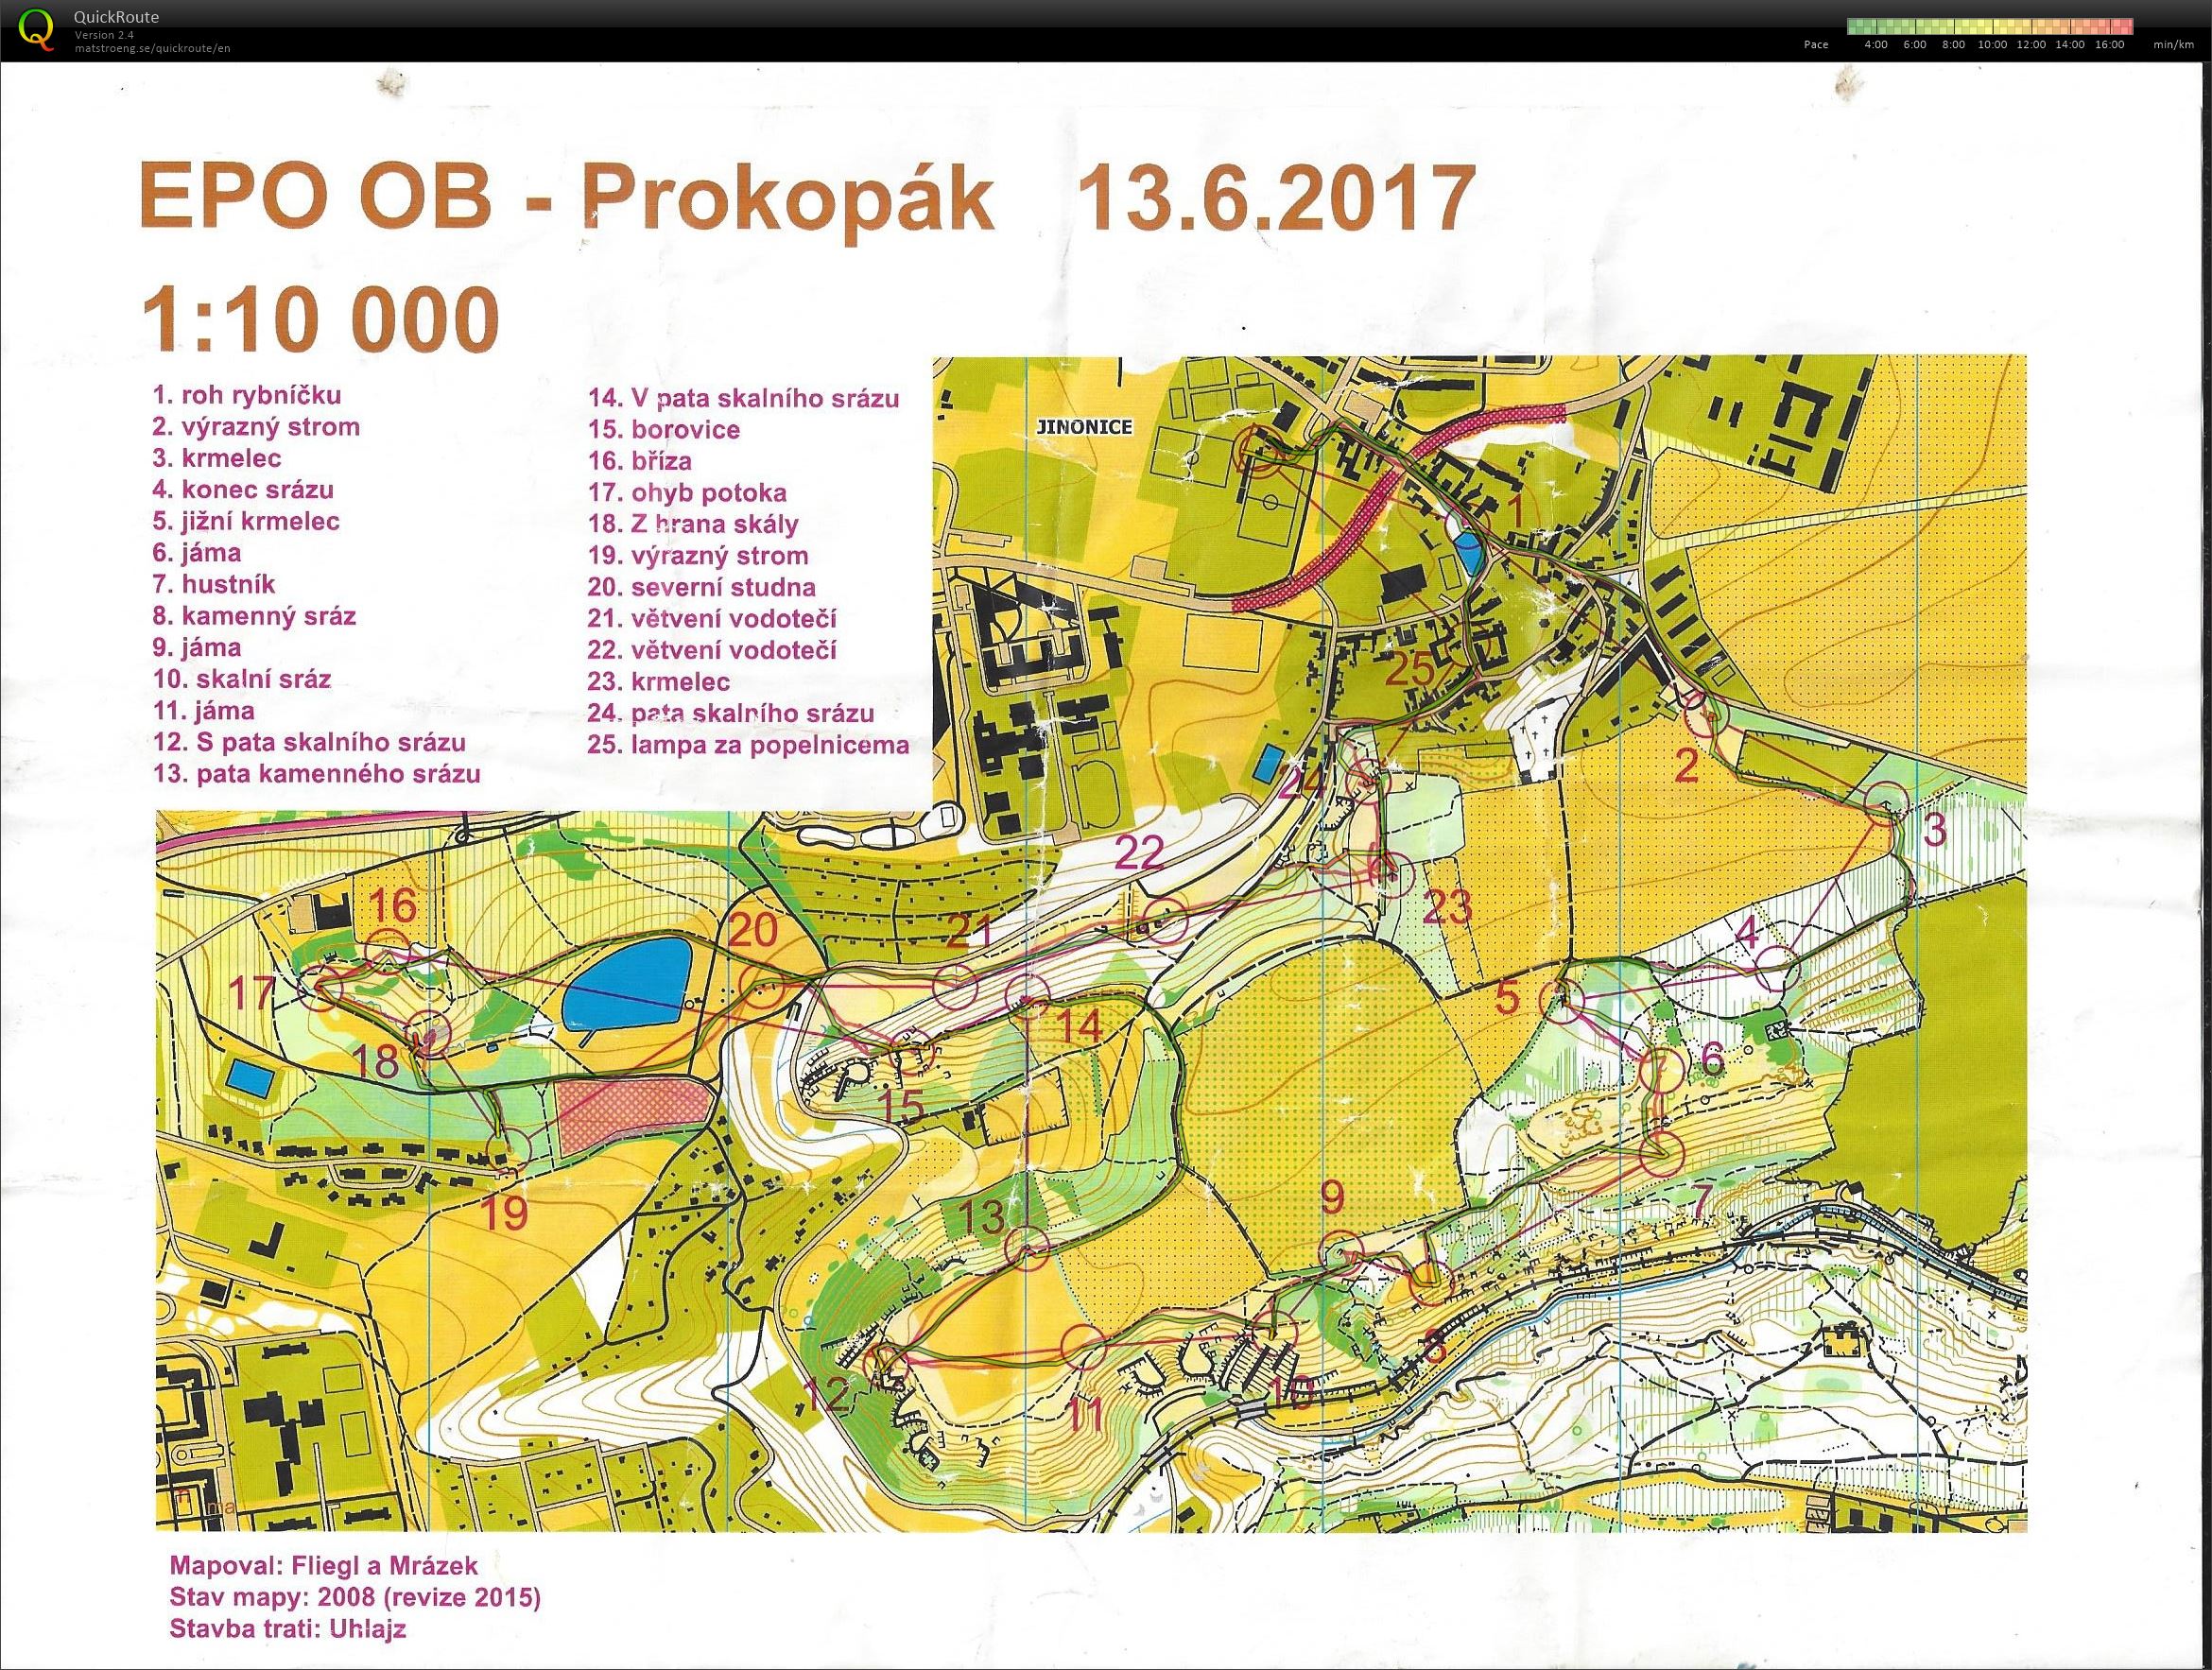 EPO OB - Prokopák (13.06.2017)